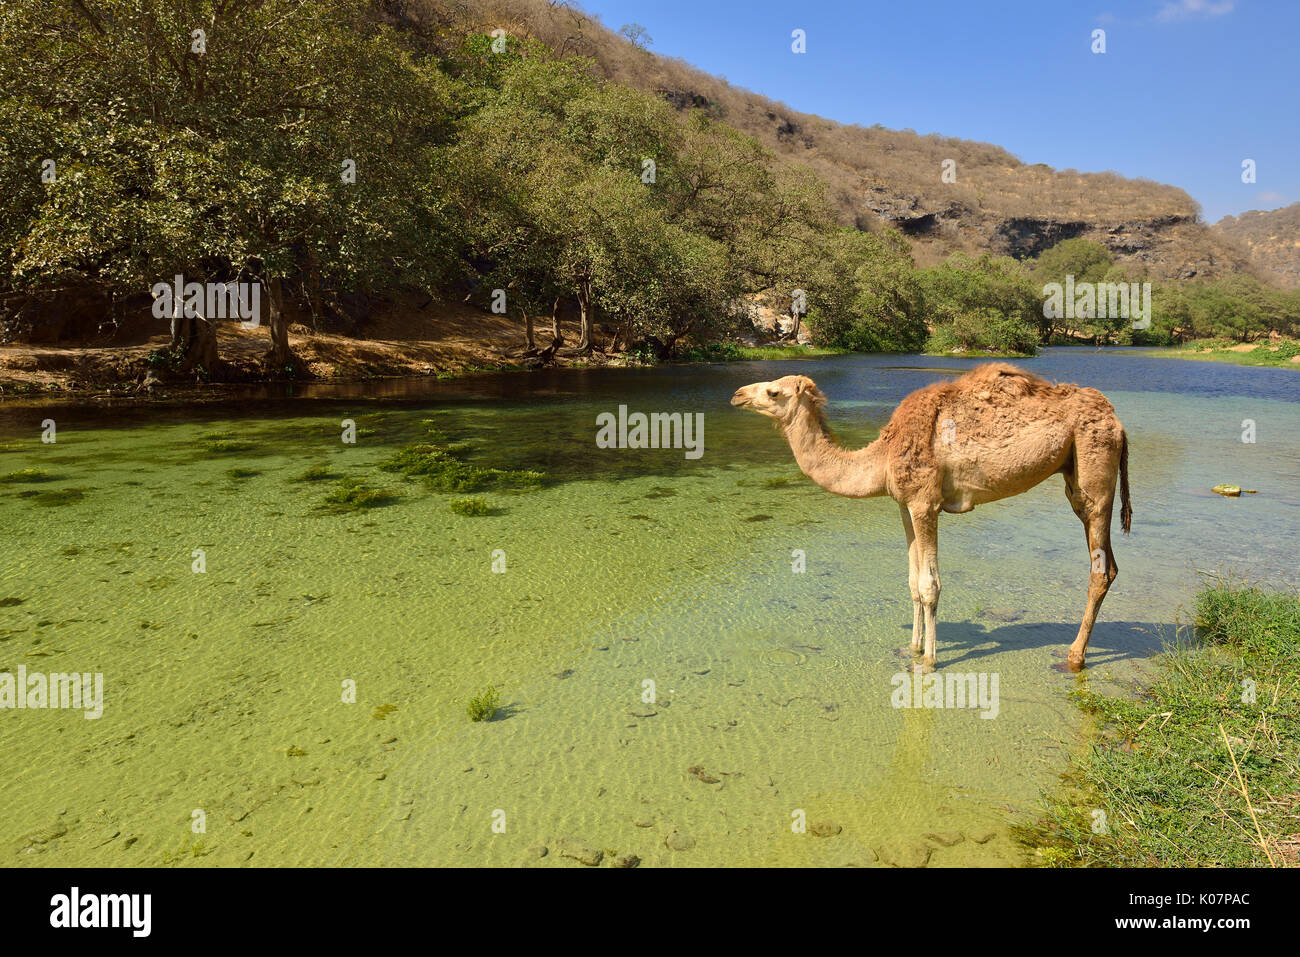 Camello arábigo (Camelus dromedarius), de pie en un río Wadi Darbat, Dhofar, Omán, Arabia Foto de stock